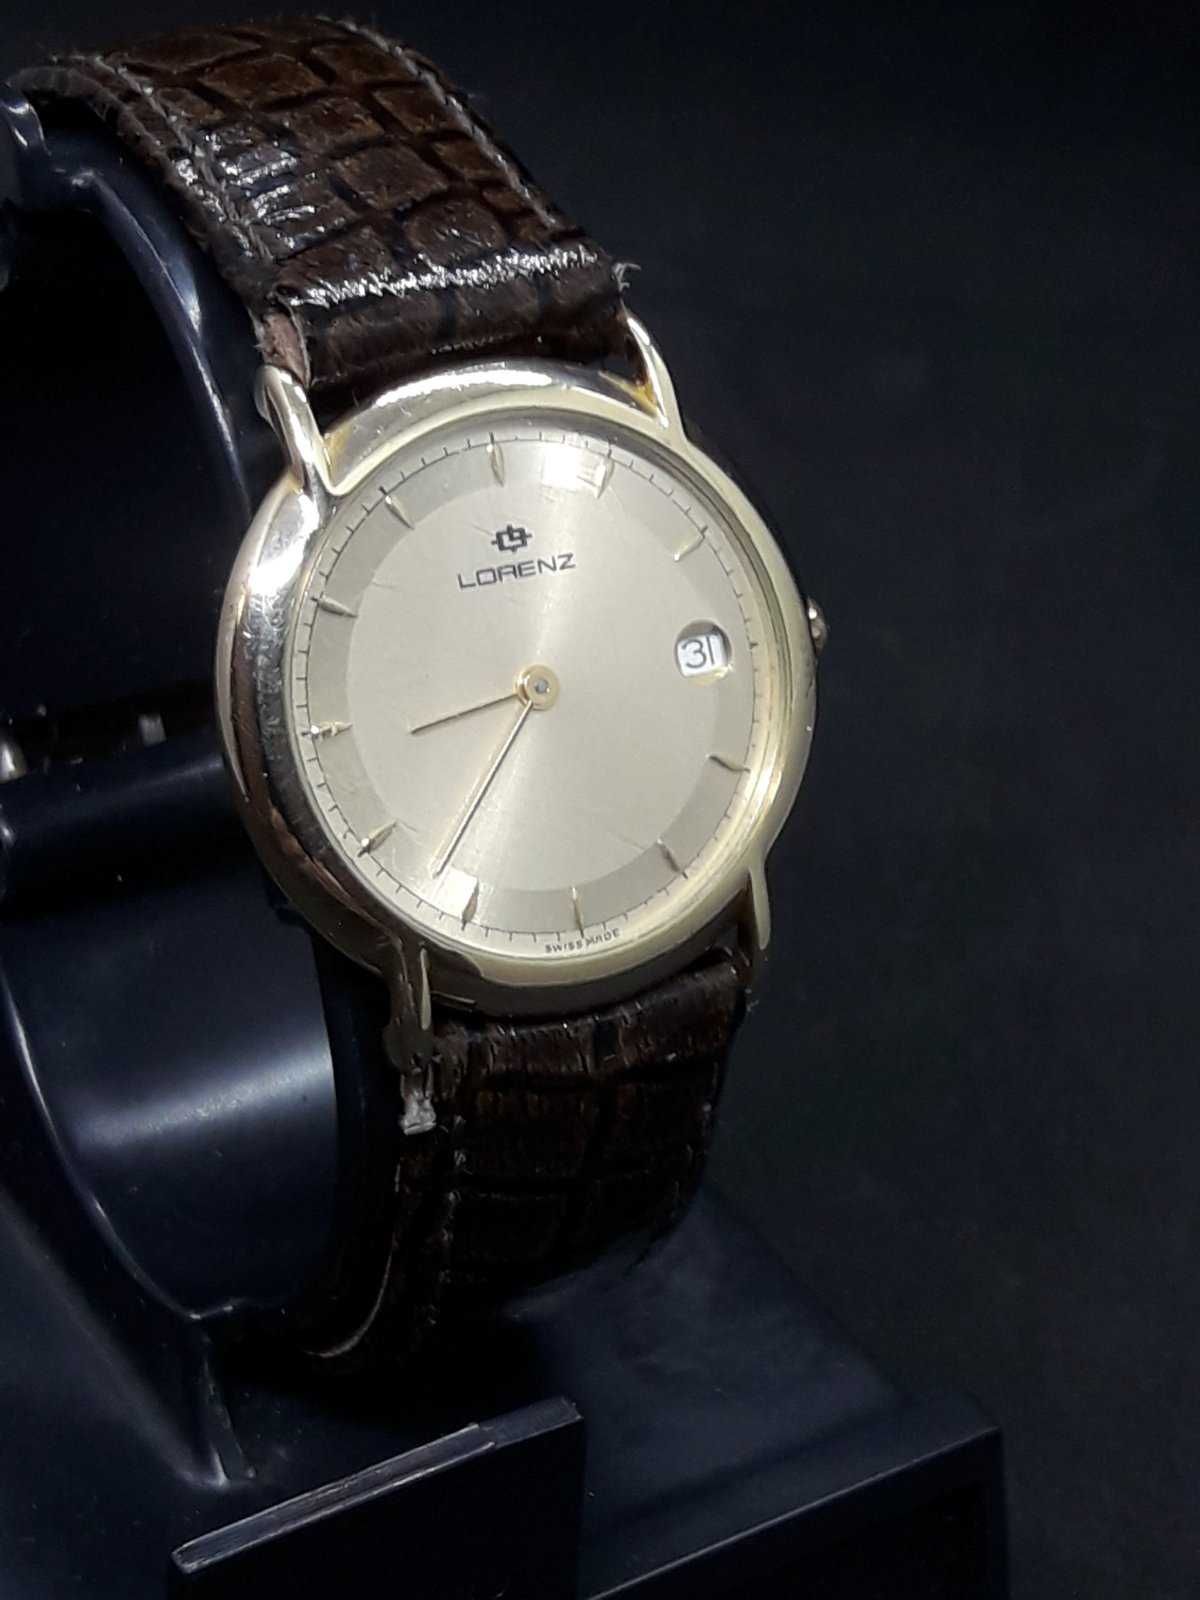 Швейцарские часы Lorenz - оригинал.